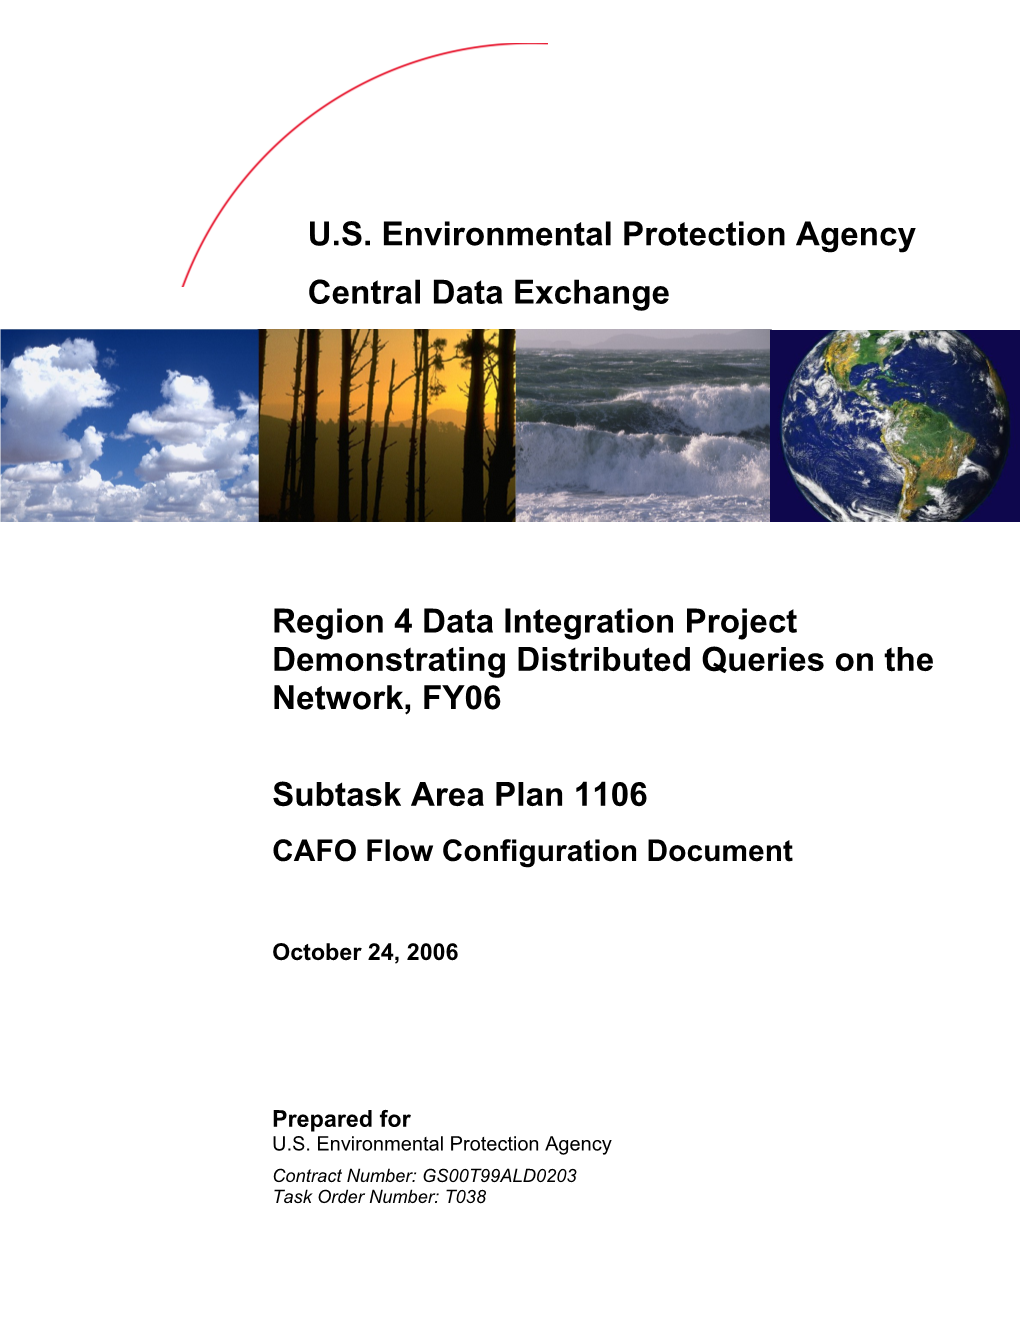 U.S. EPA Cdxregion 4 Data Integration Project